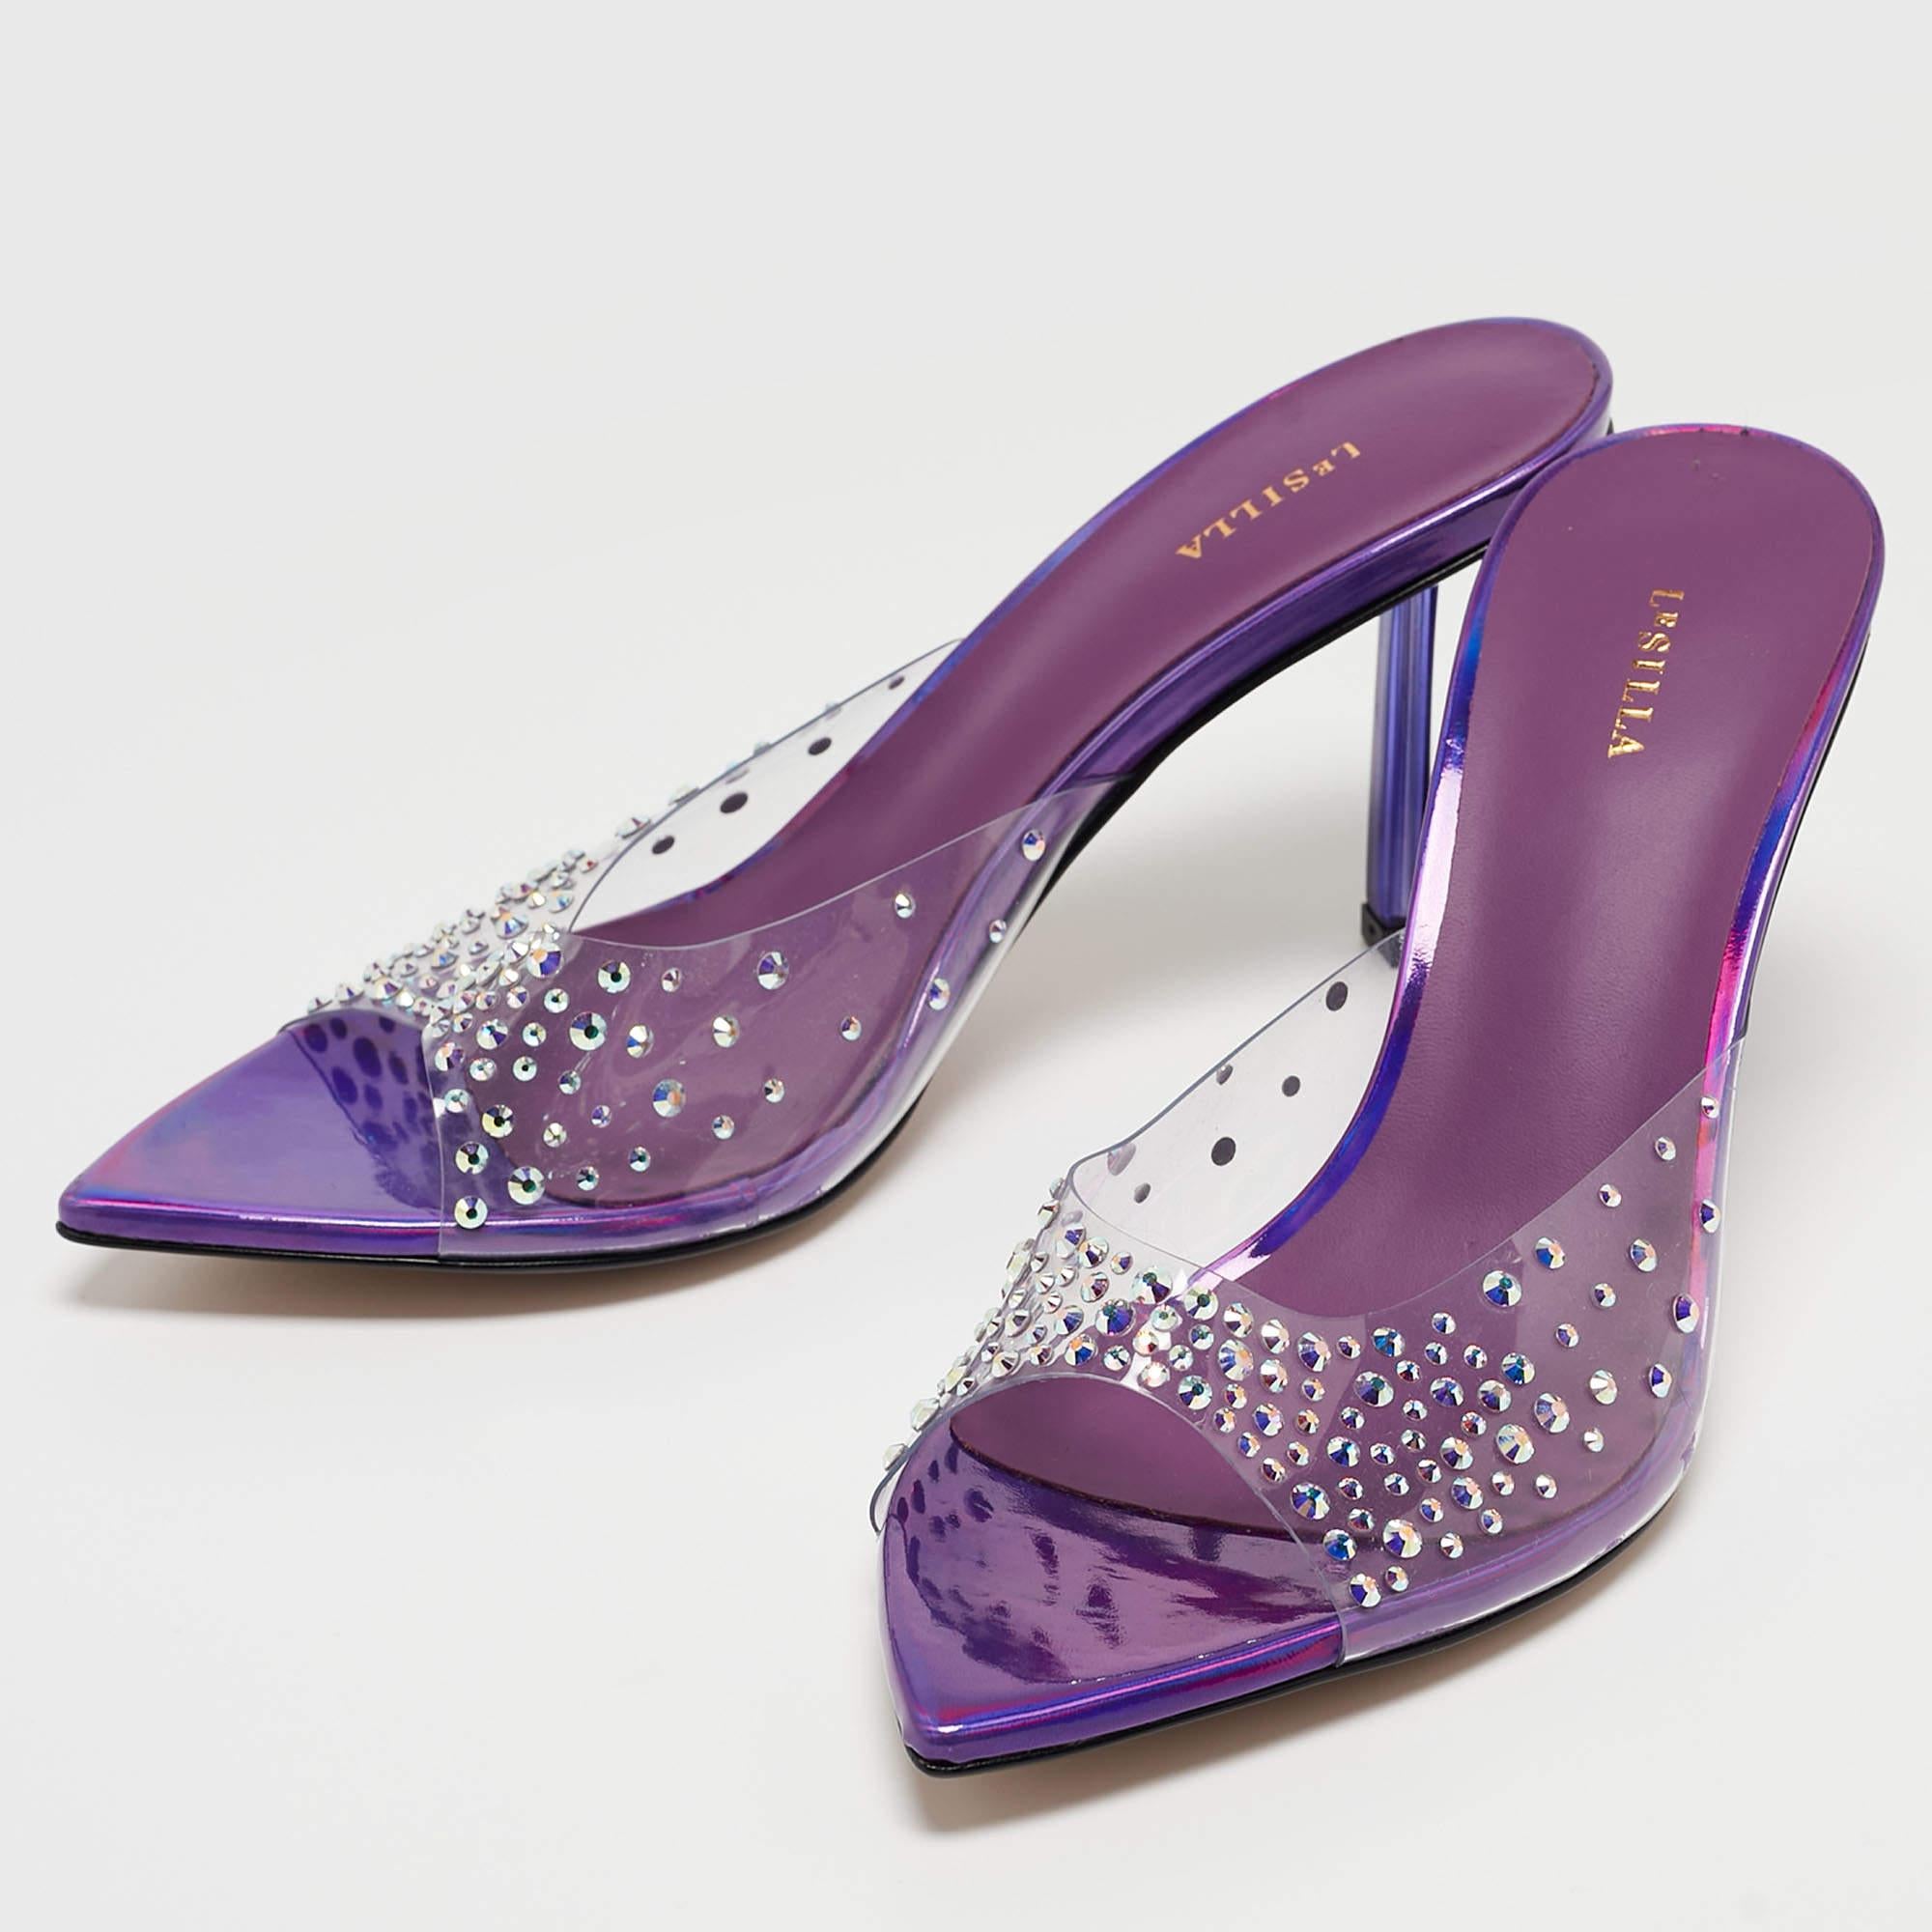 Le Silla Transparent/Purple Crystal Embellished PVC Slide Sandals Size 36 3